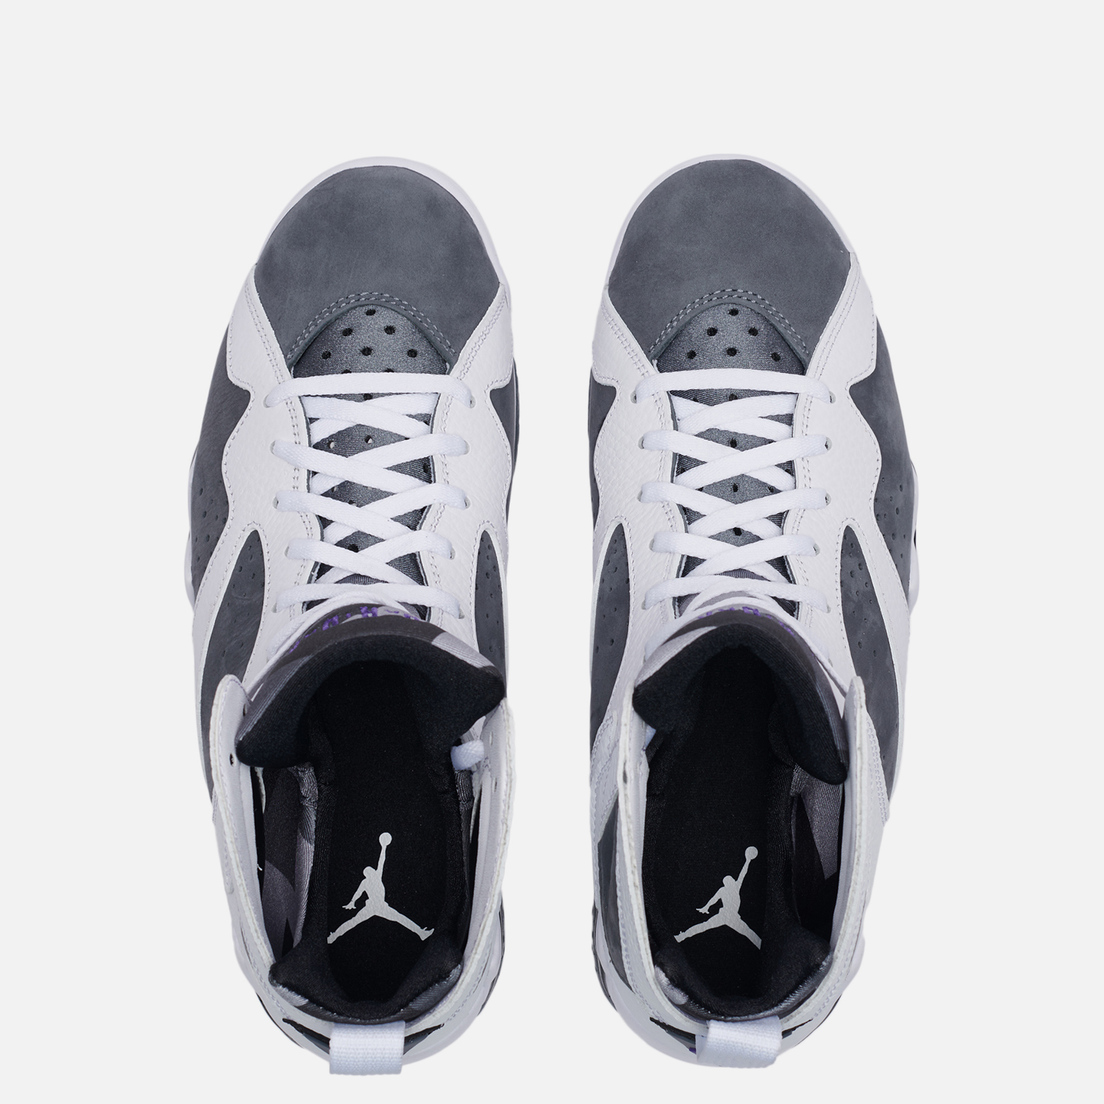 Jordan Мужские кроссовки Air Jordan 7 Retro Flint